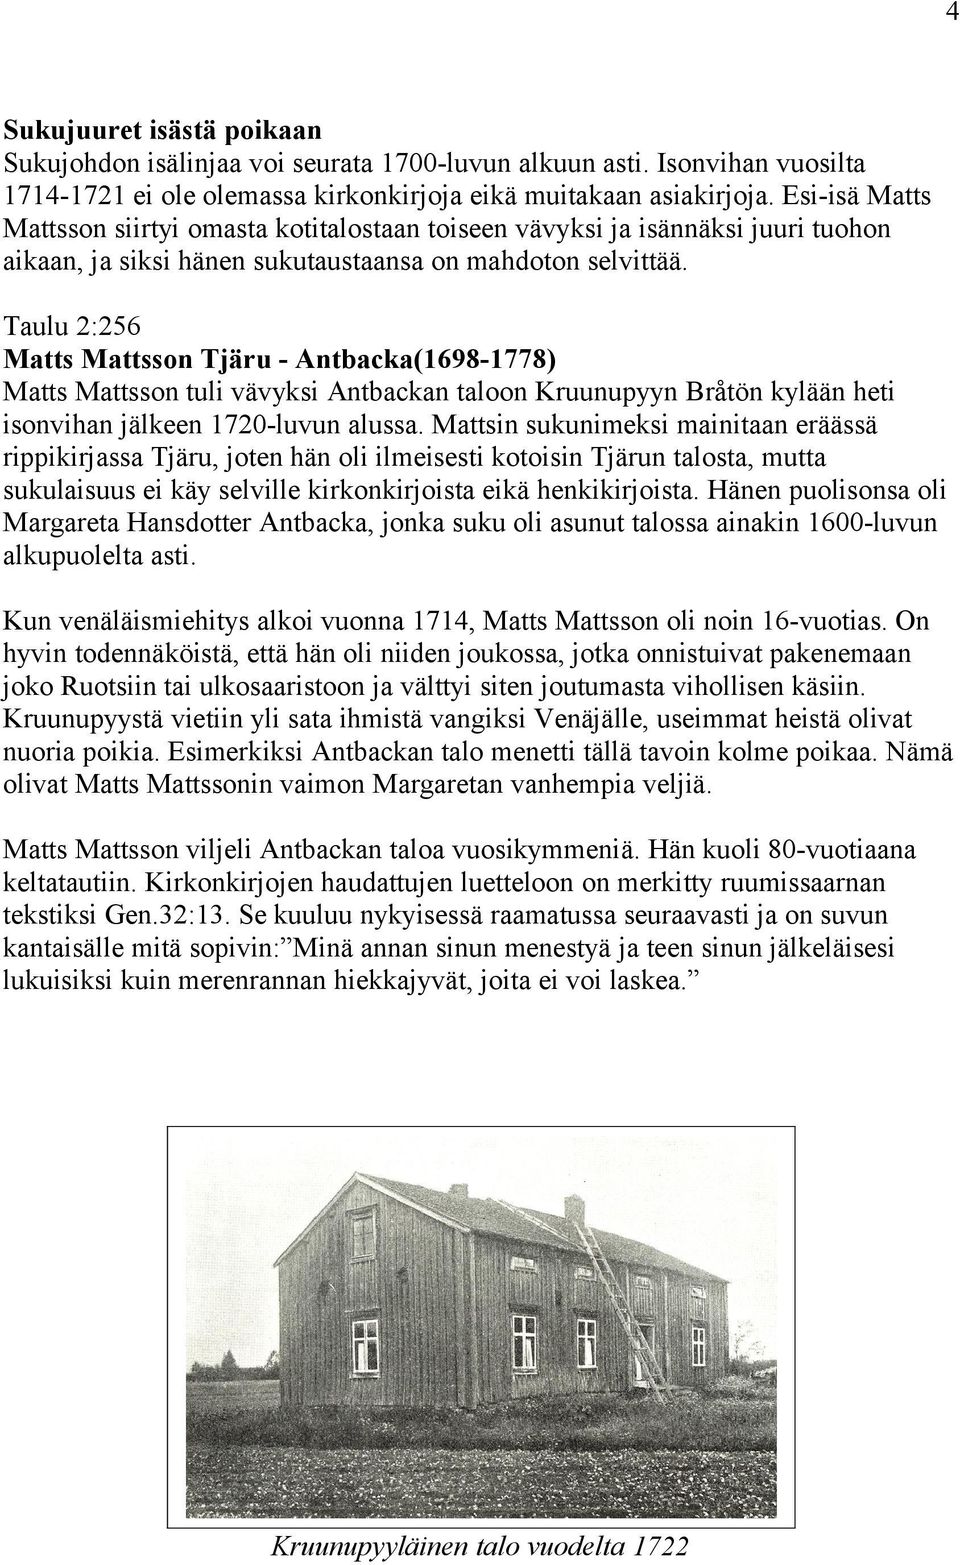 Taulu 2:256 Matts Mattsson Tjäru - Antbacka(1698-1778) Matts Mattsson tuli vävyksi Antbackan taloon Kruunupyyn Bråtön kylään heti isonvihan jälkeen 1720-luvun alussa.